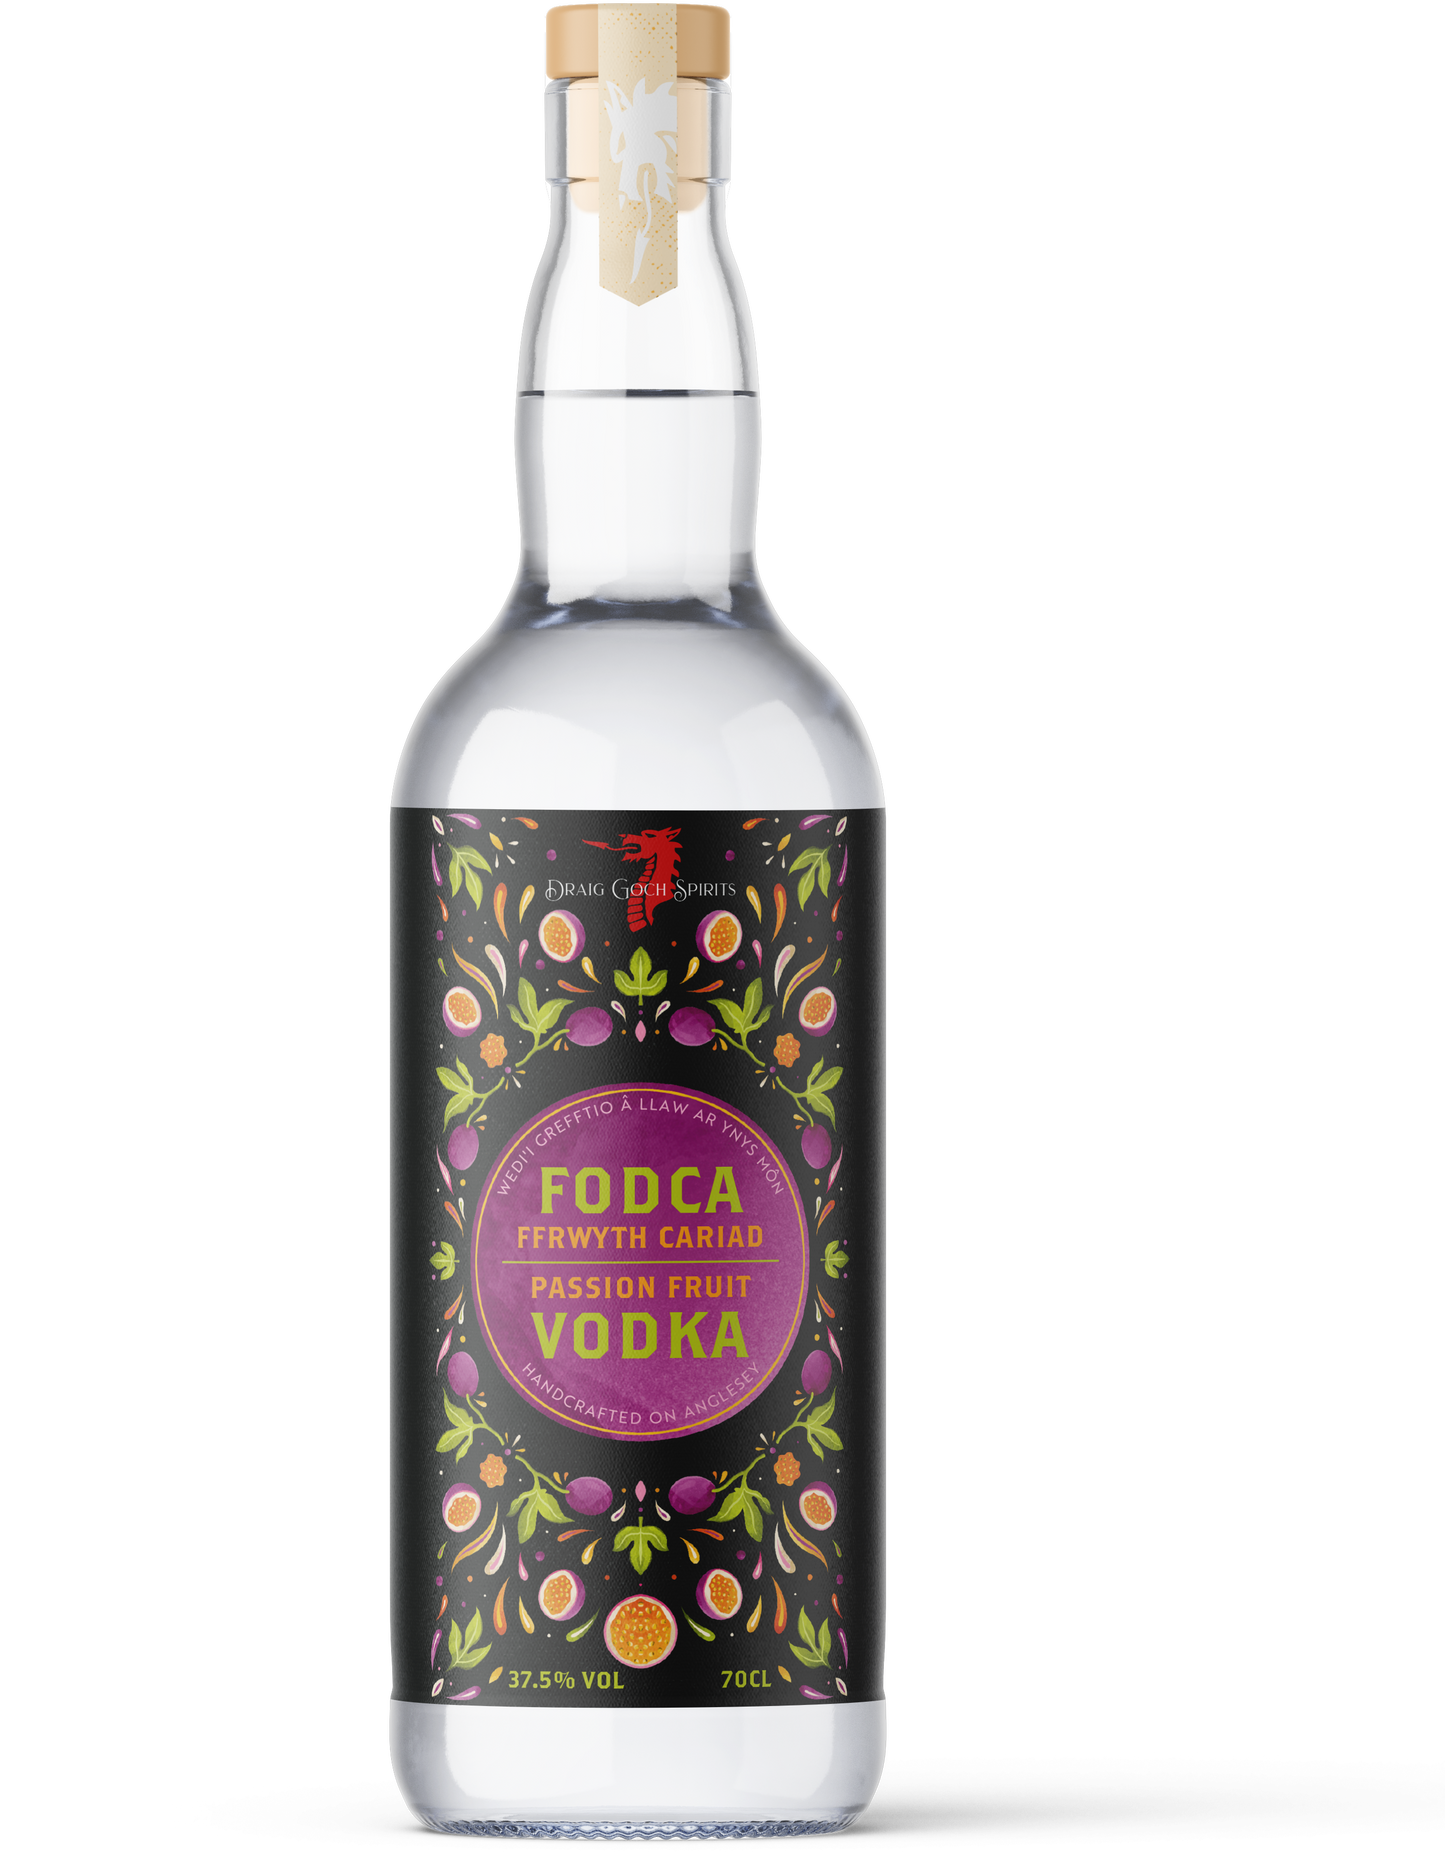 Draig Goch passion Fruit Vodka - Fodca Ffrwyth Cariad